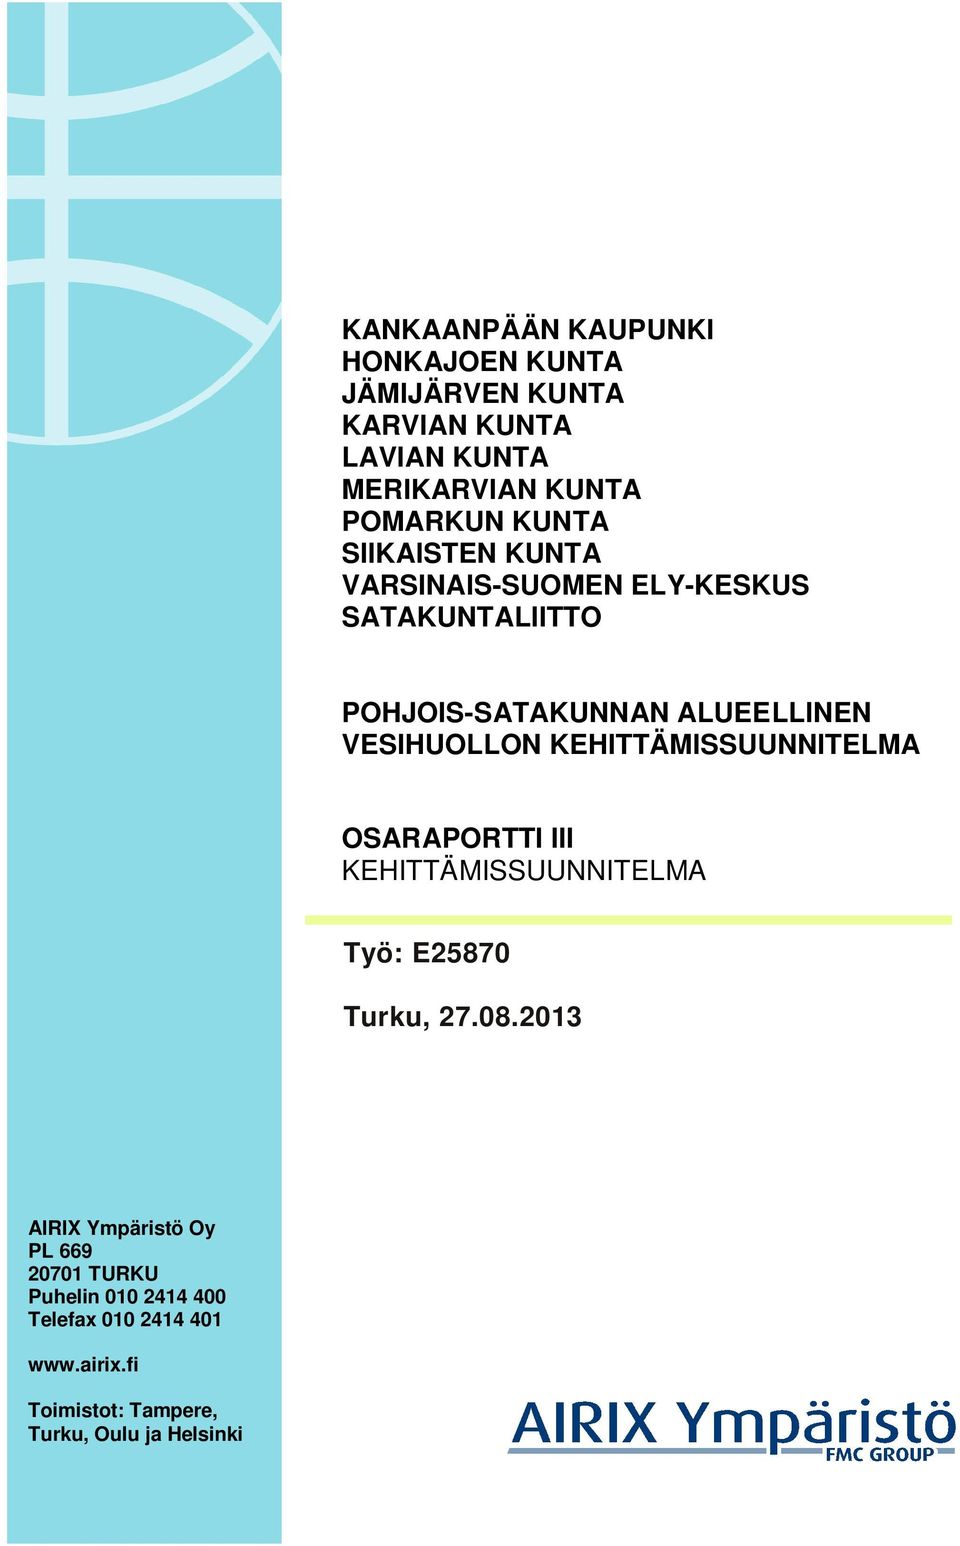 KEHITTÄMISSUUNNITELMA OSARAPORTTI III KEHITTÄMISSUUNNITELMA Työ: E25870 Turku, 27.08.